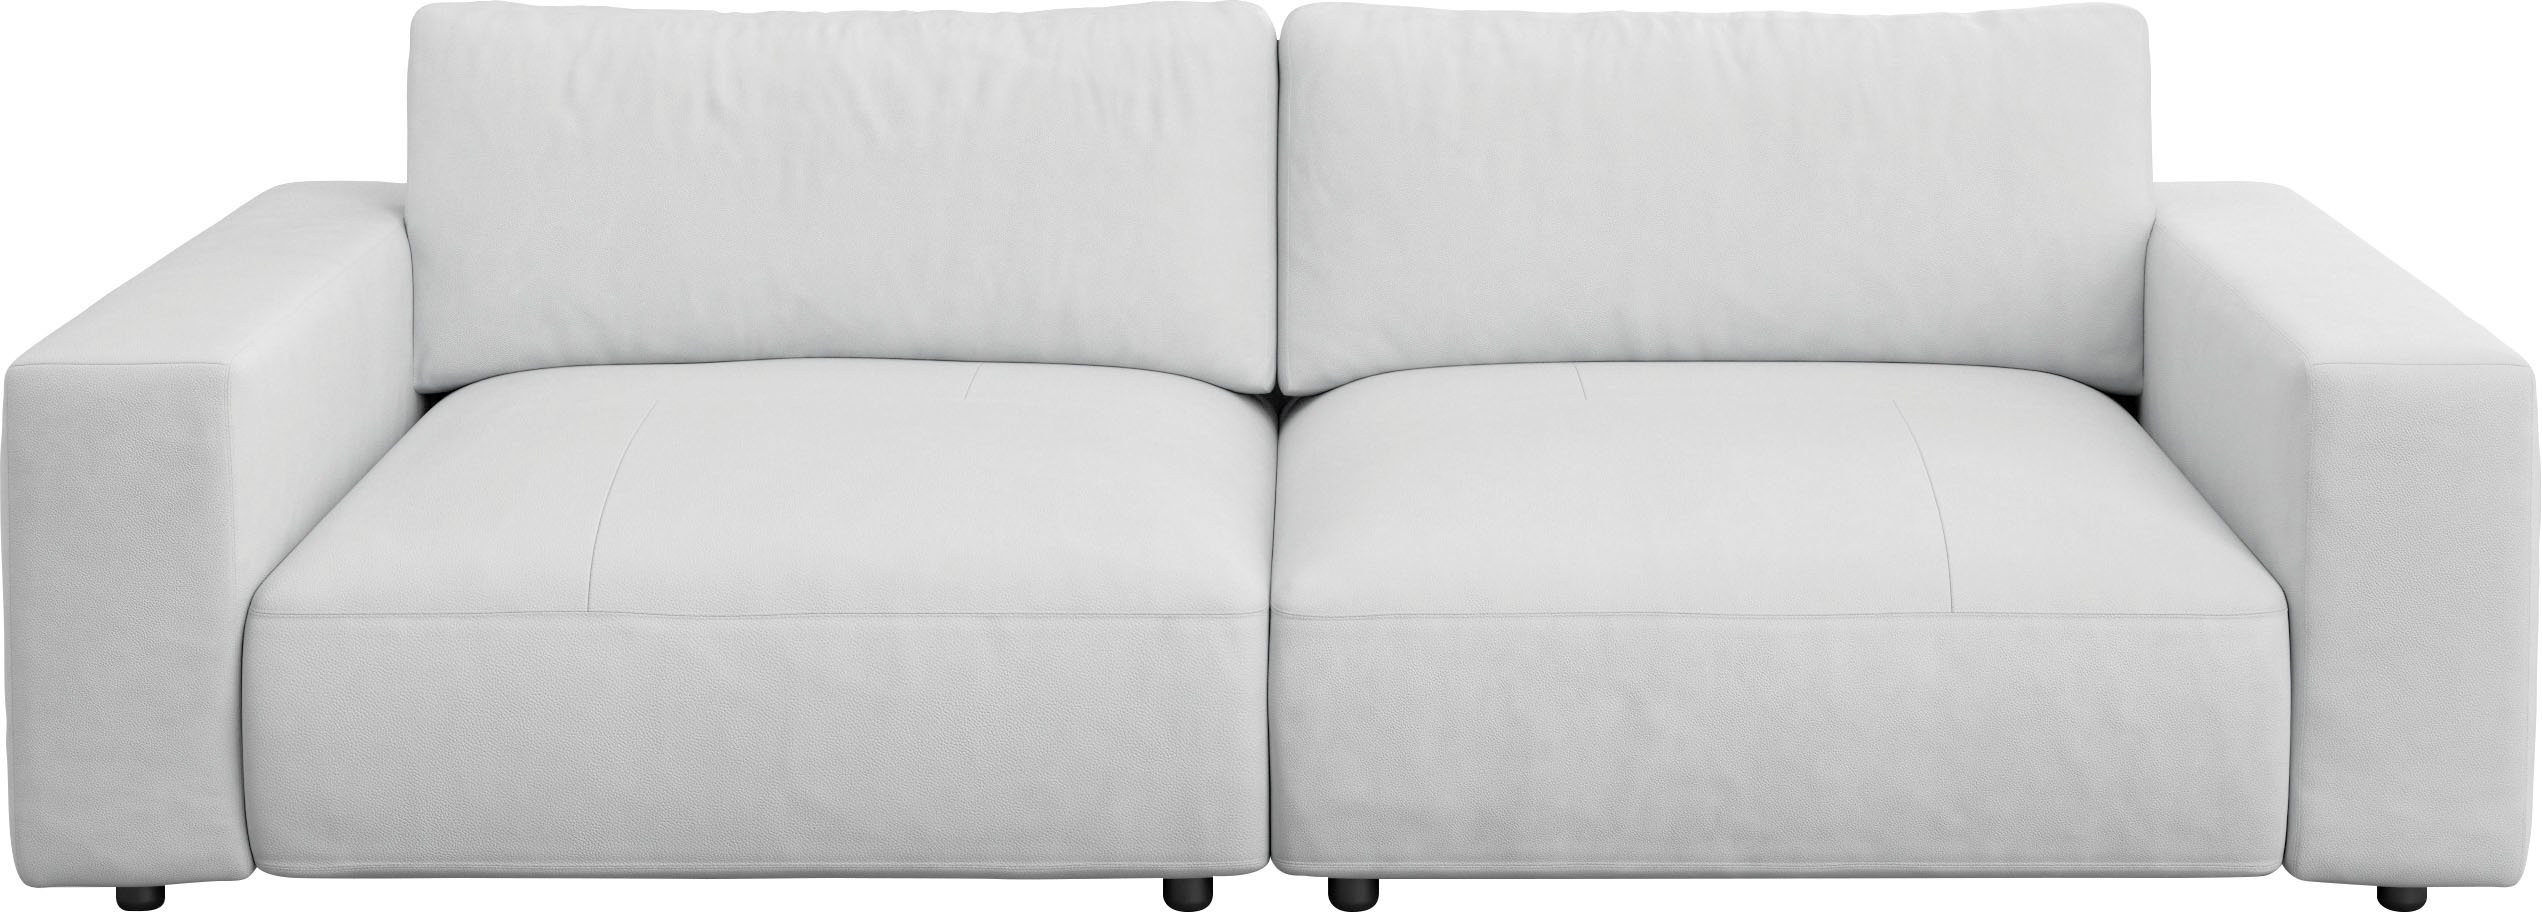 unterschiedlichen in Nähten, 2,5-Sitzer Musterring Big-Sofa Qualitäten vielen by 4 branded und GALLERY LUCIA, M